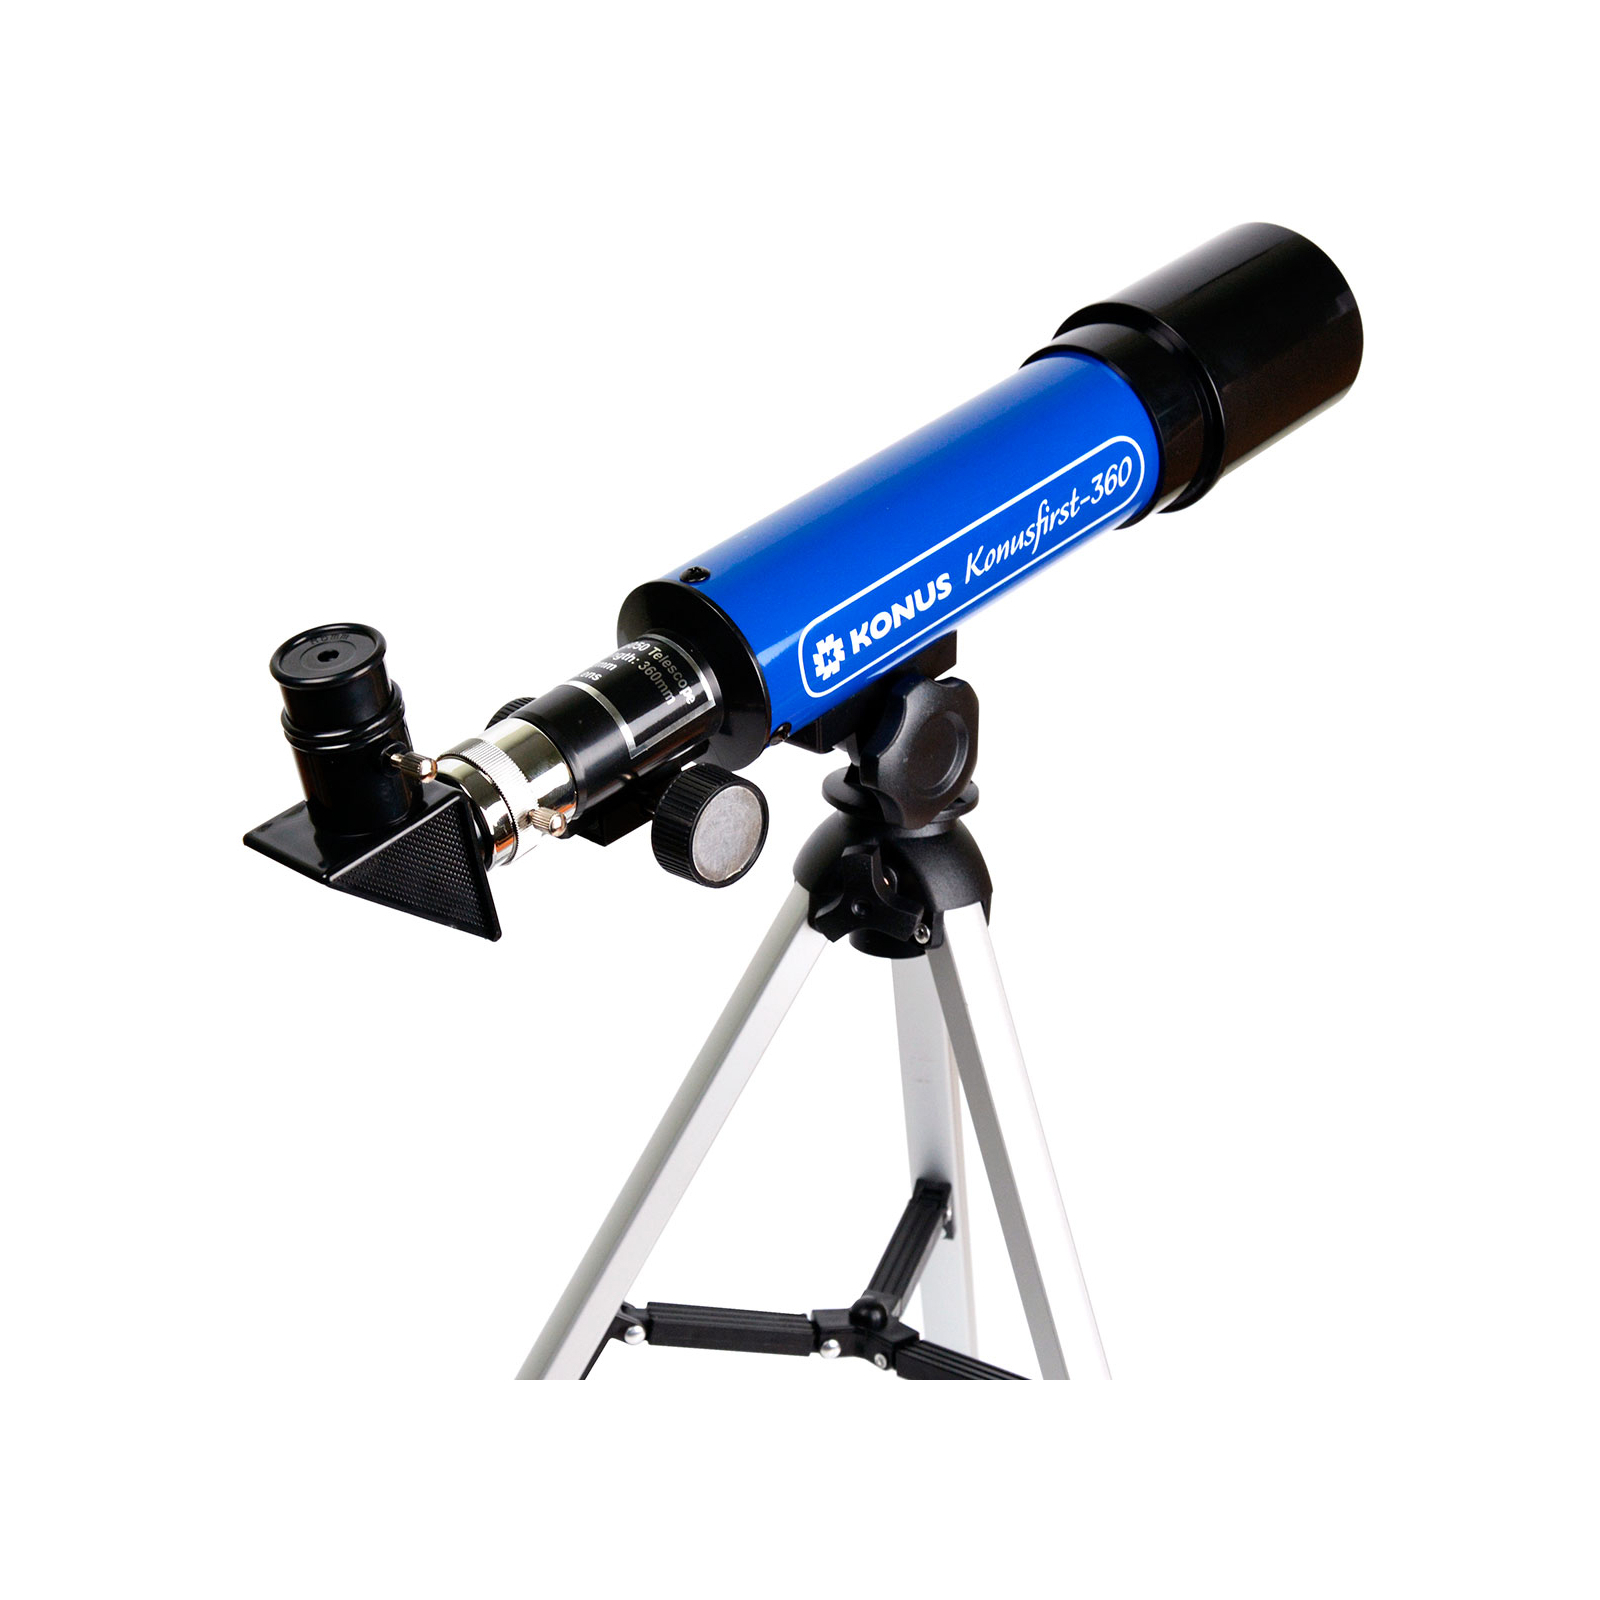 Телескоп Konus KonusFirst-360 50/360 (1722) зображення 2